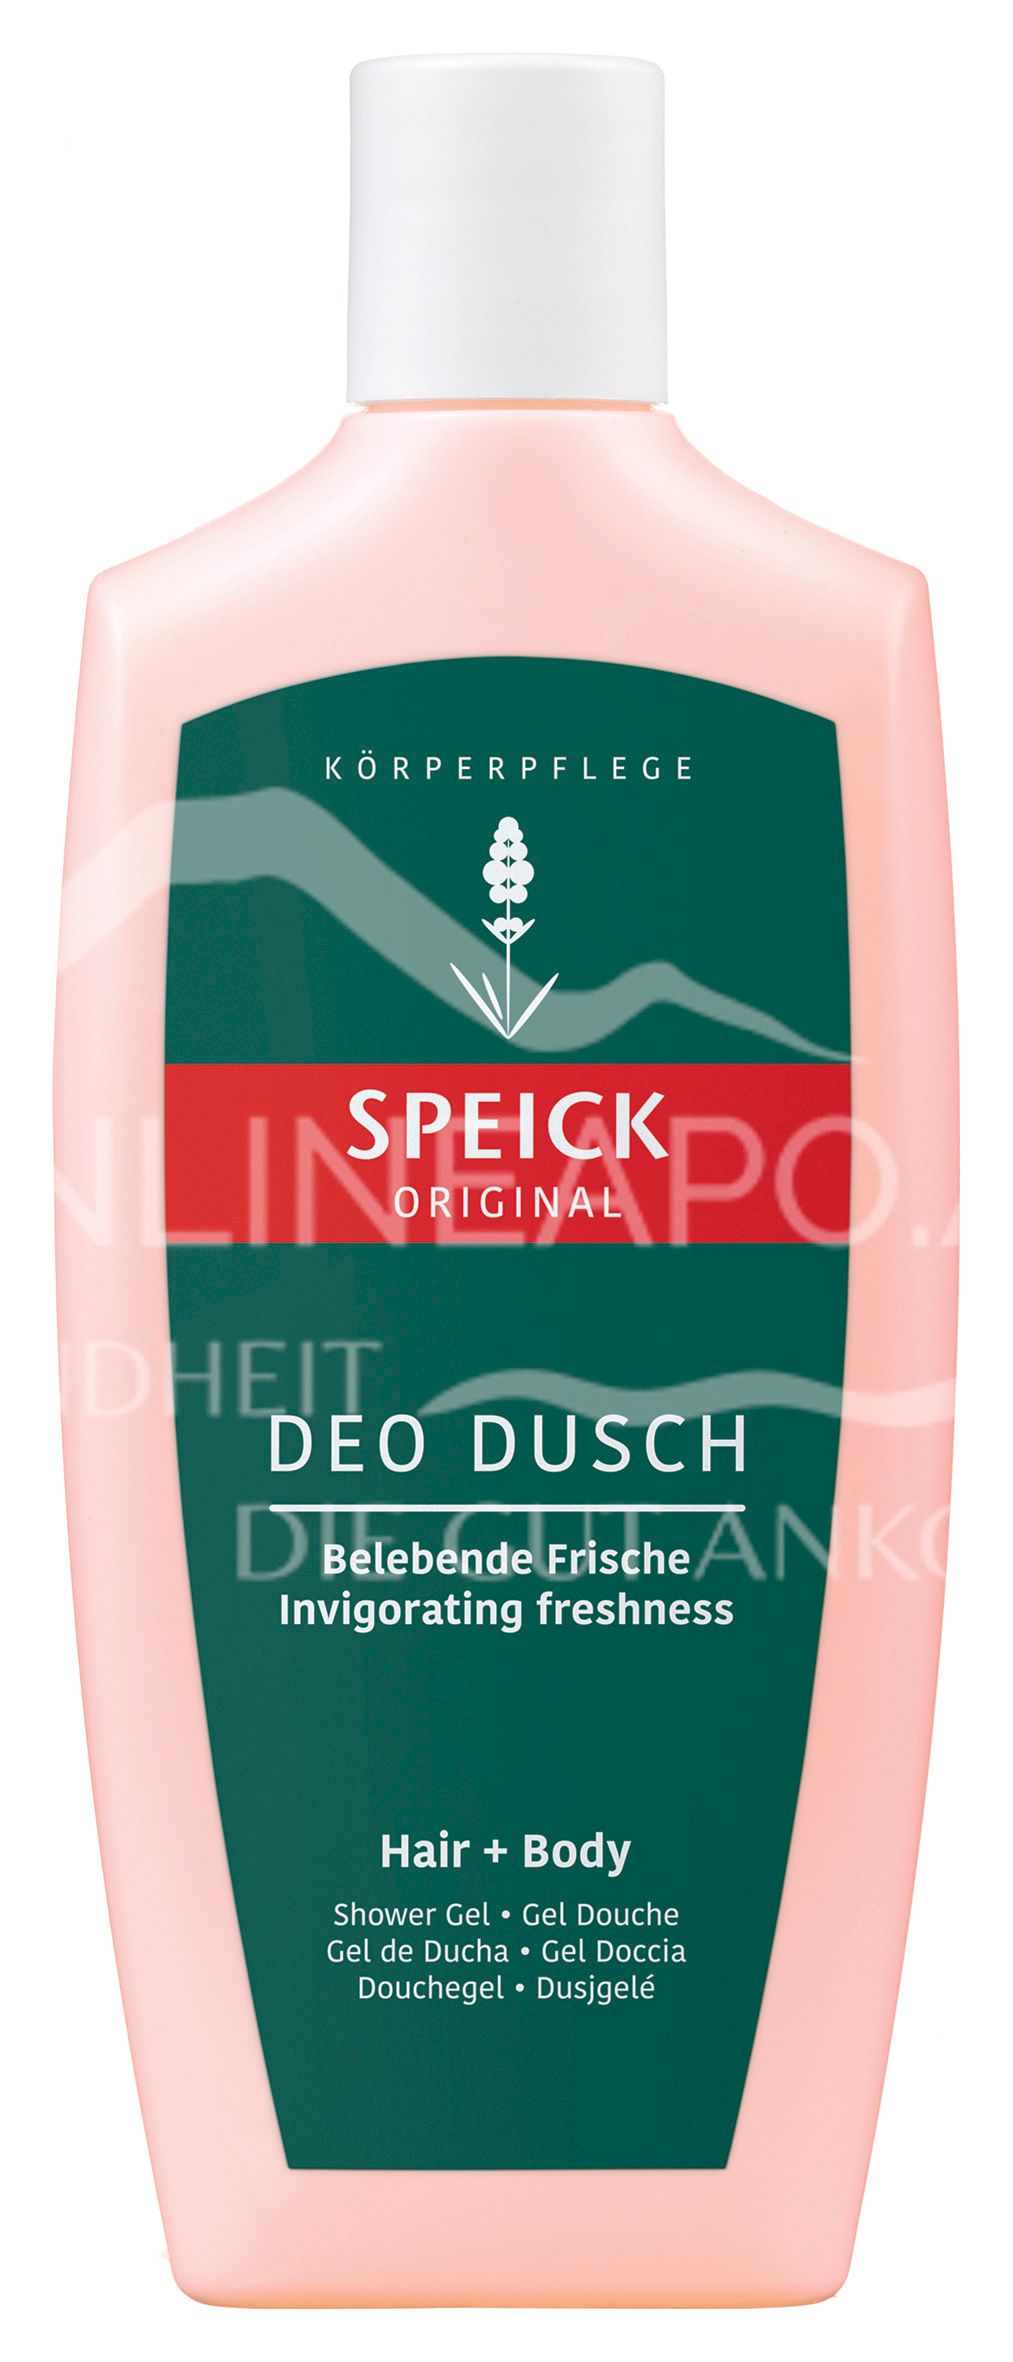 Speick Original Deo Dusch